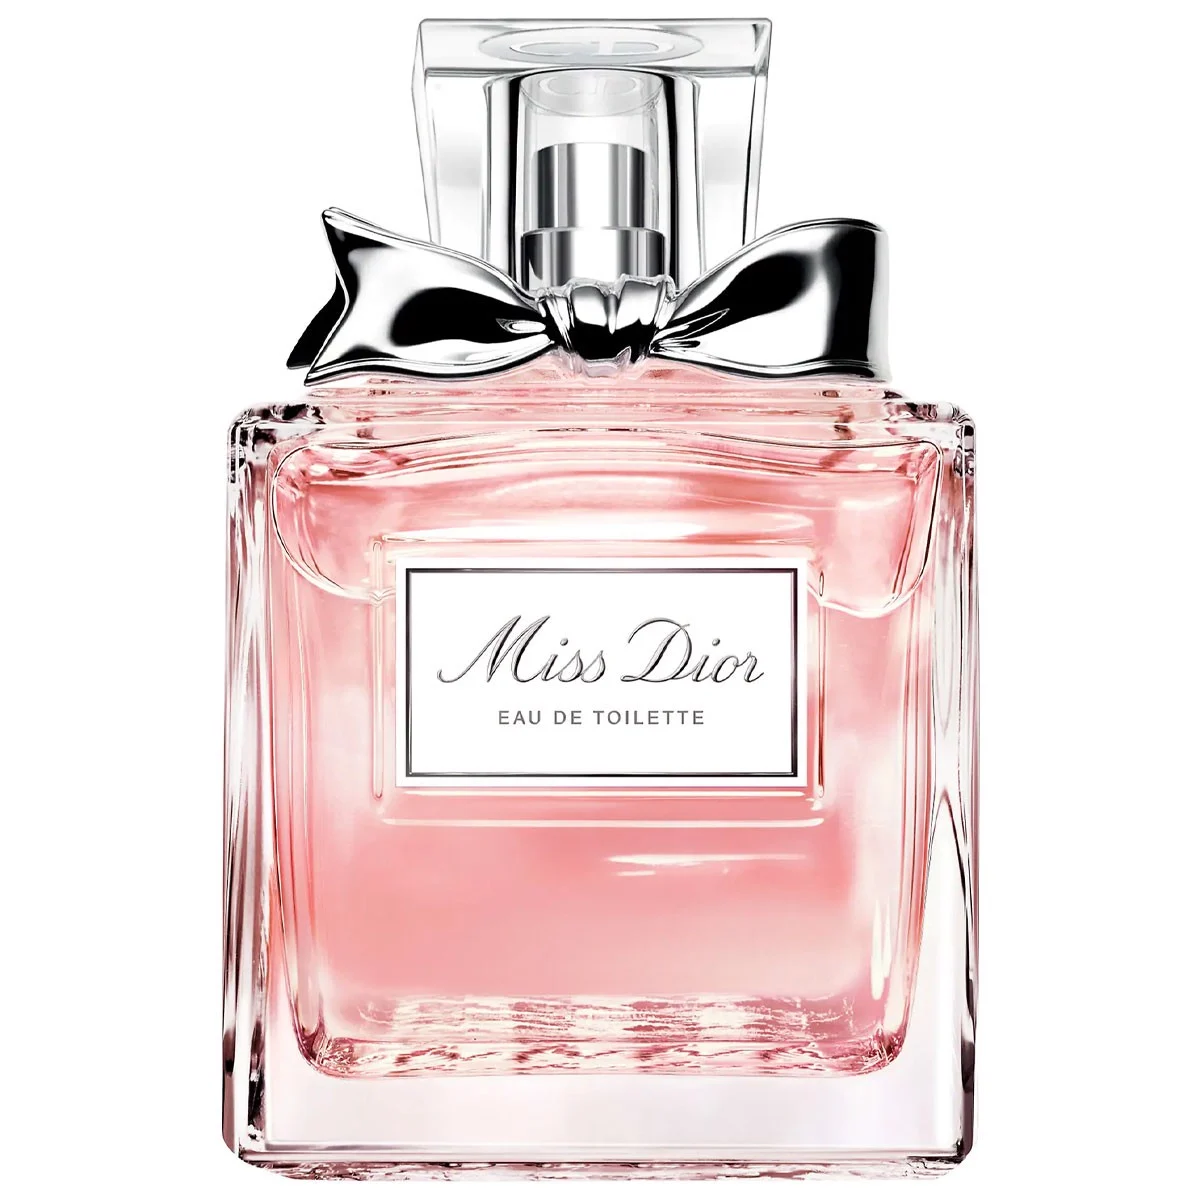 Giới thiệu nước hoa nữ Dior Miss Dior EDT